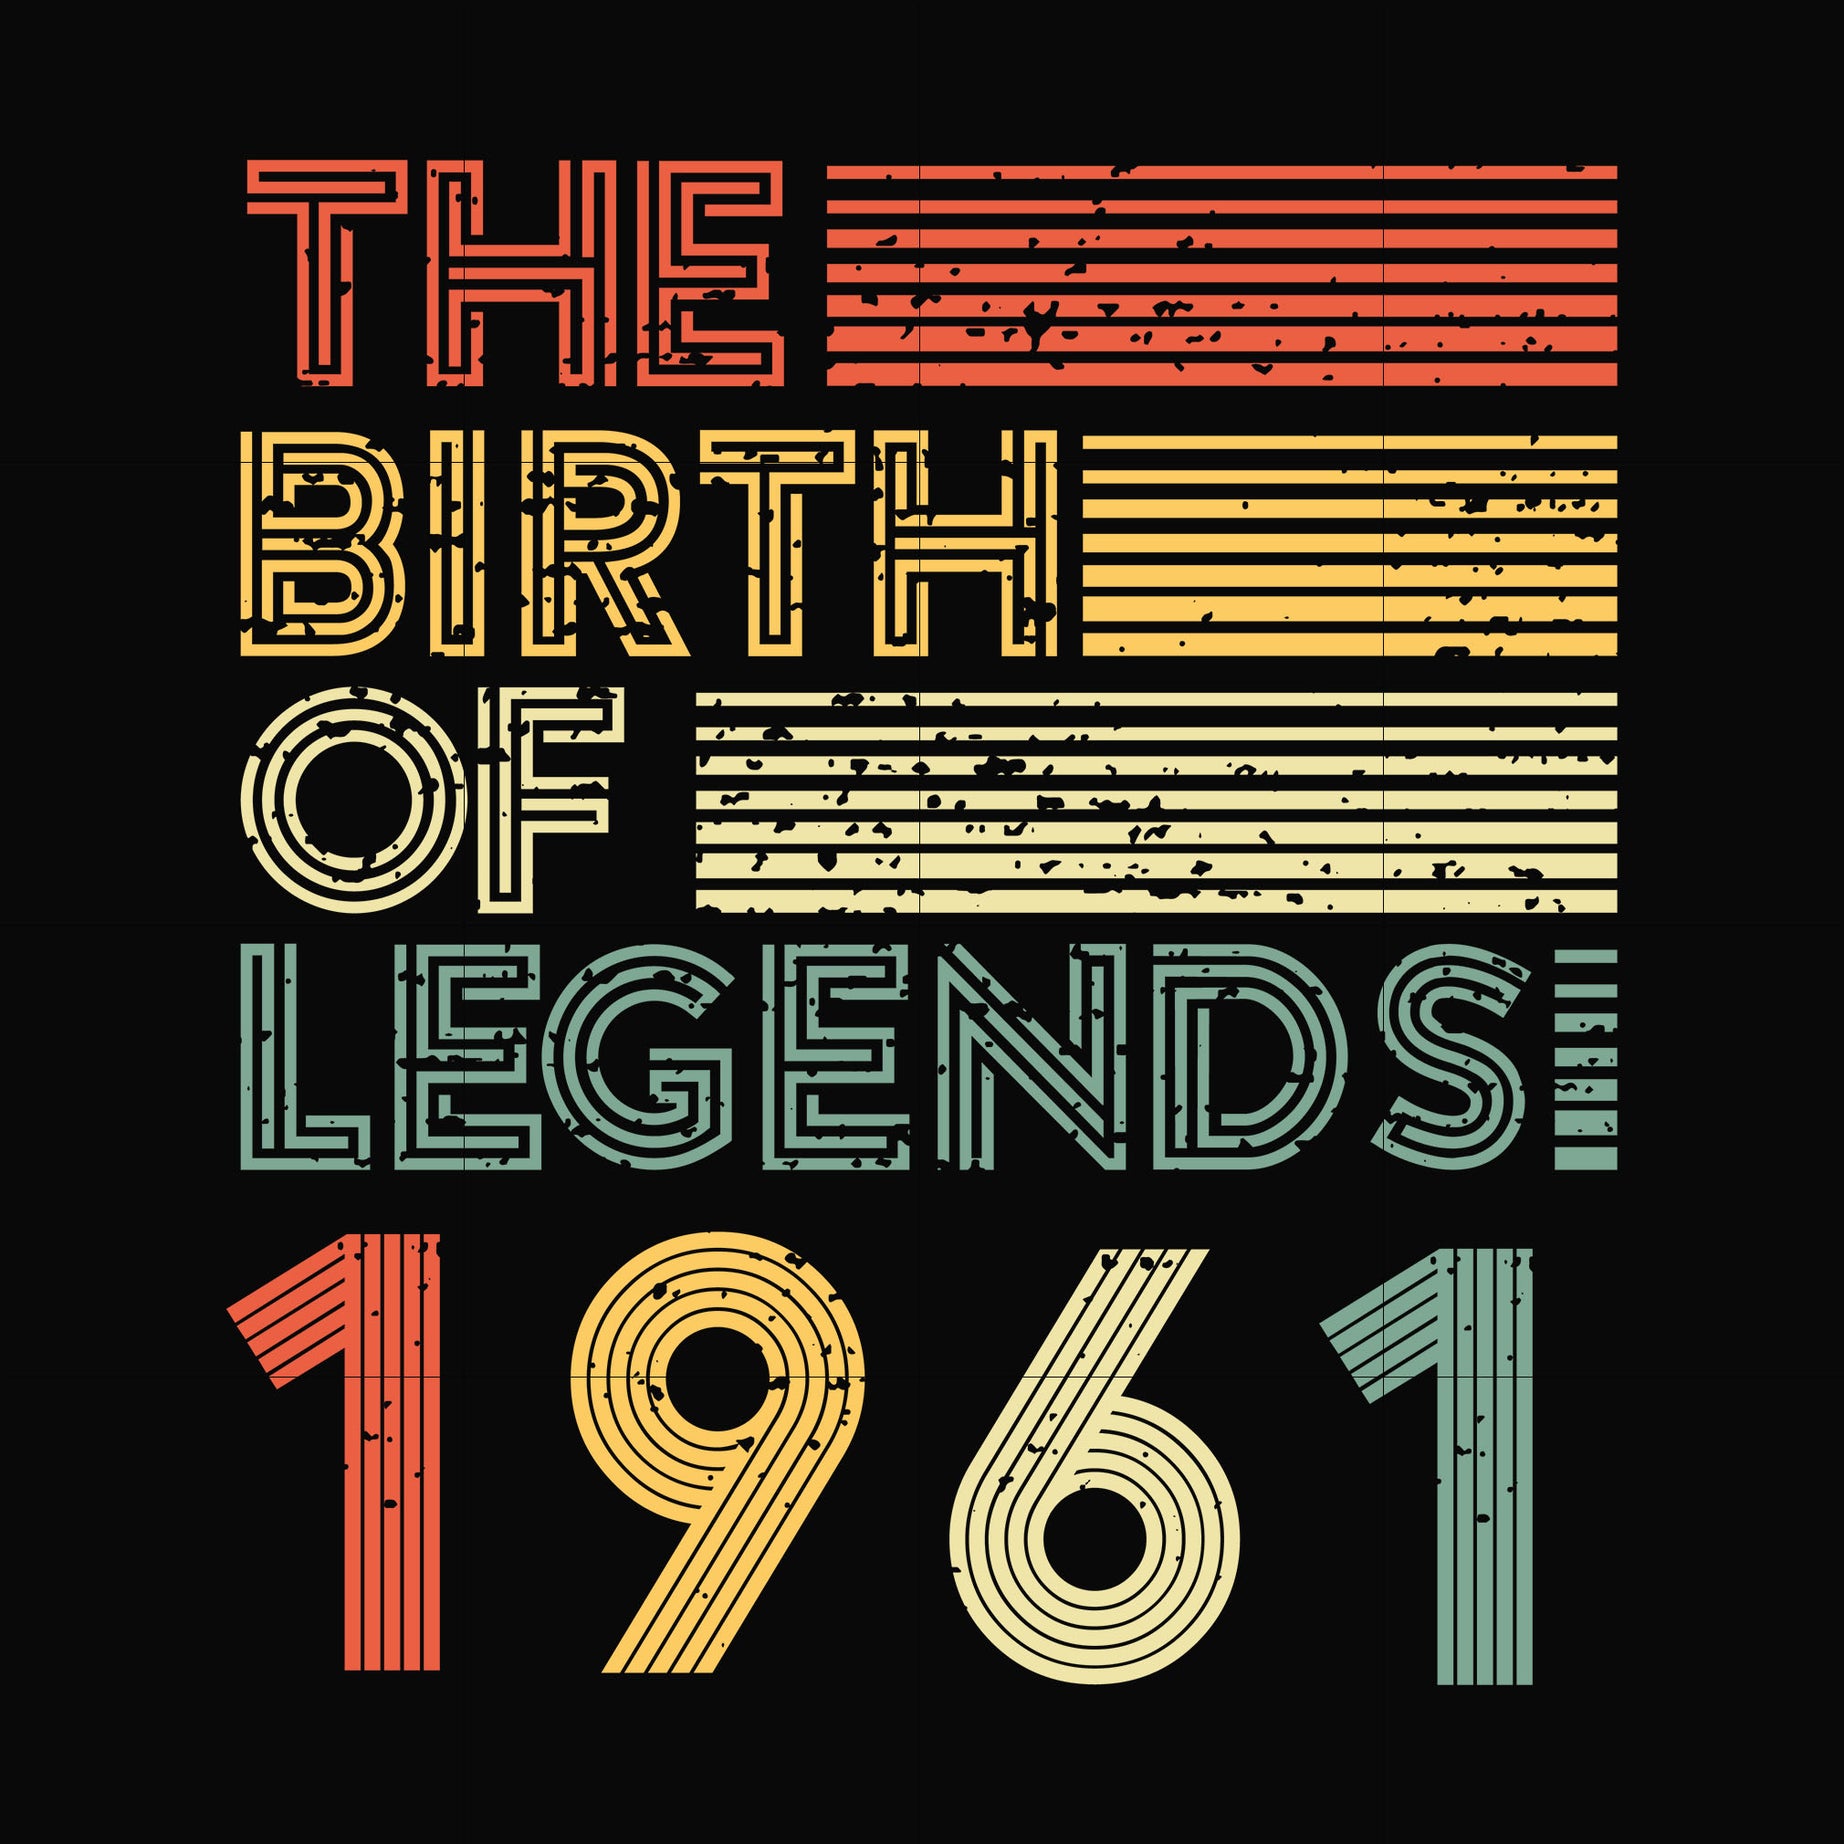 The birth of legends 1961 svg, png, dxf, eps digital file NBD0063